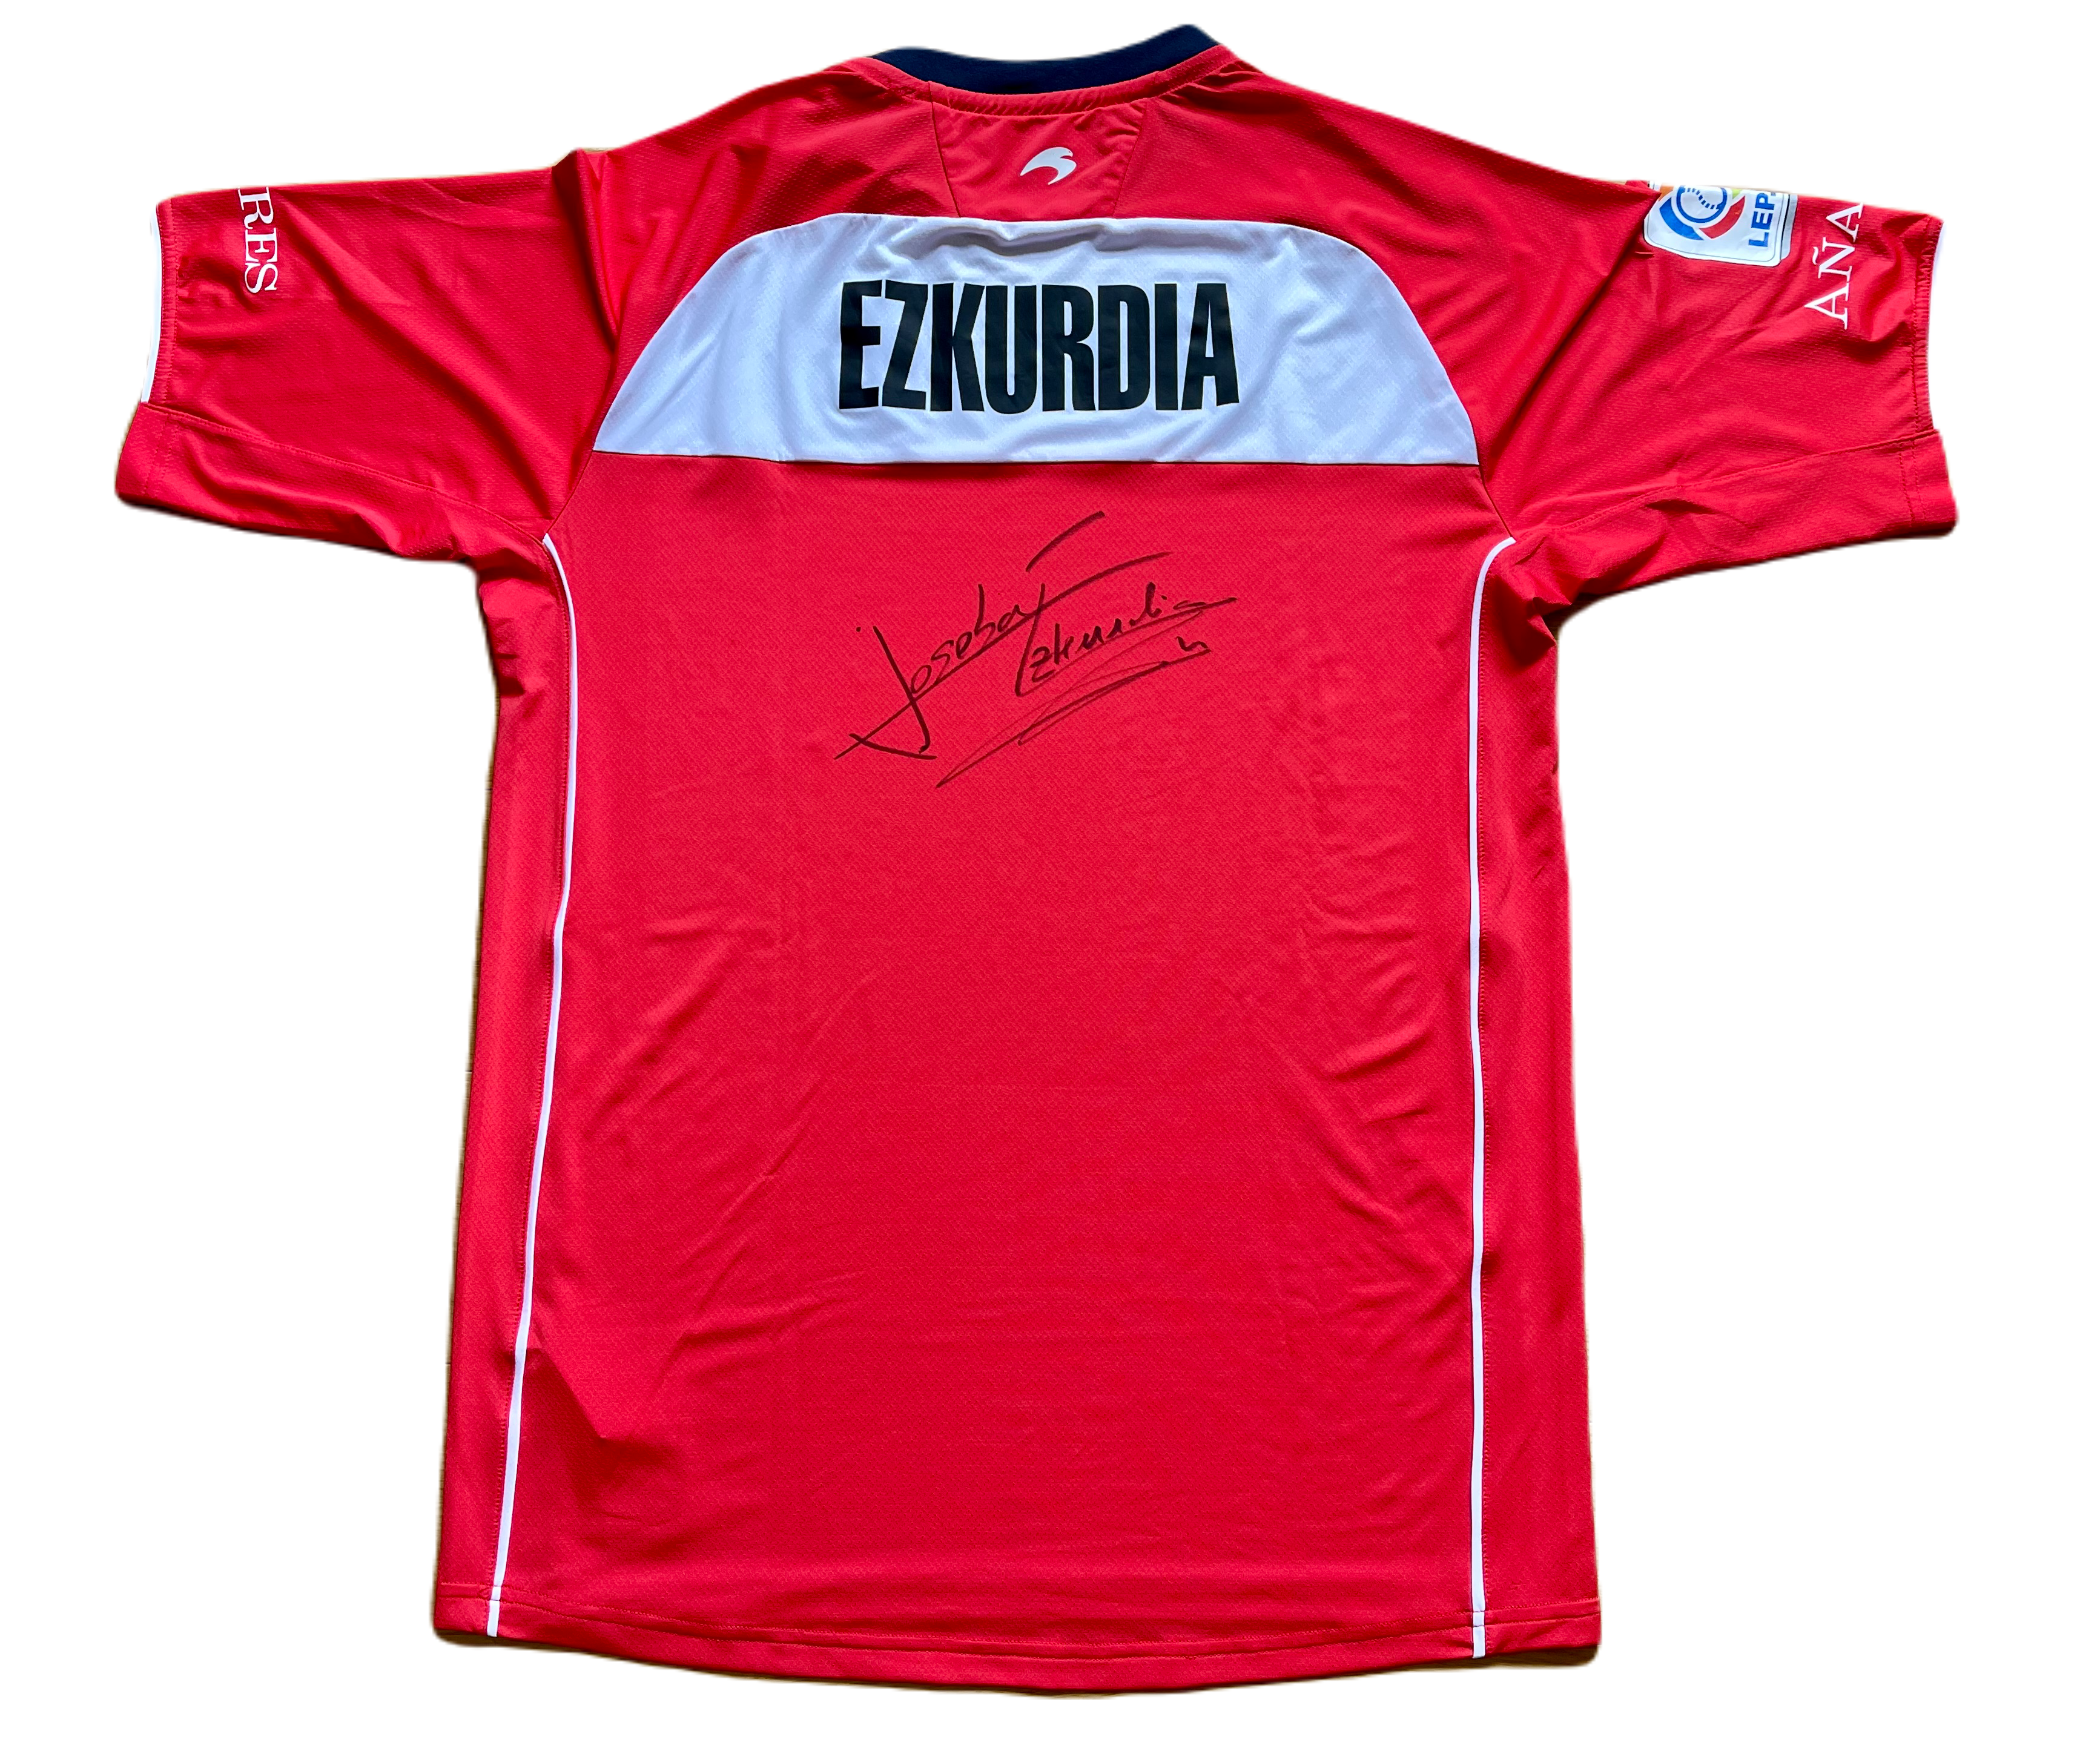 Camiseta pelotari Joseba Ezkurdia. Firmada